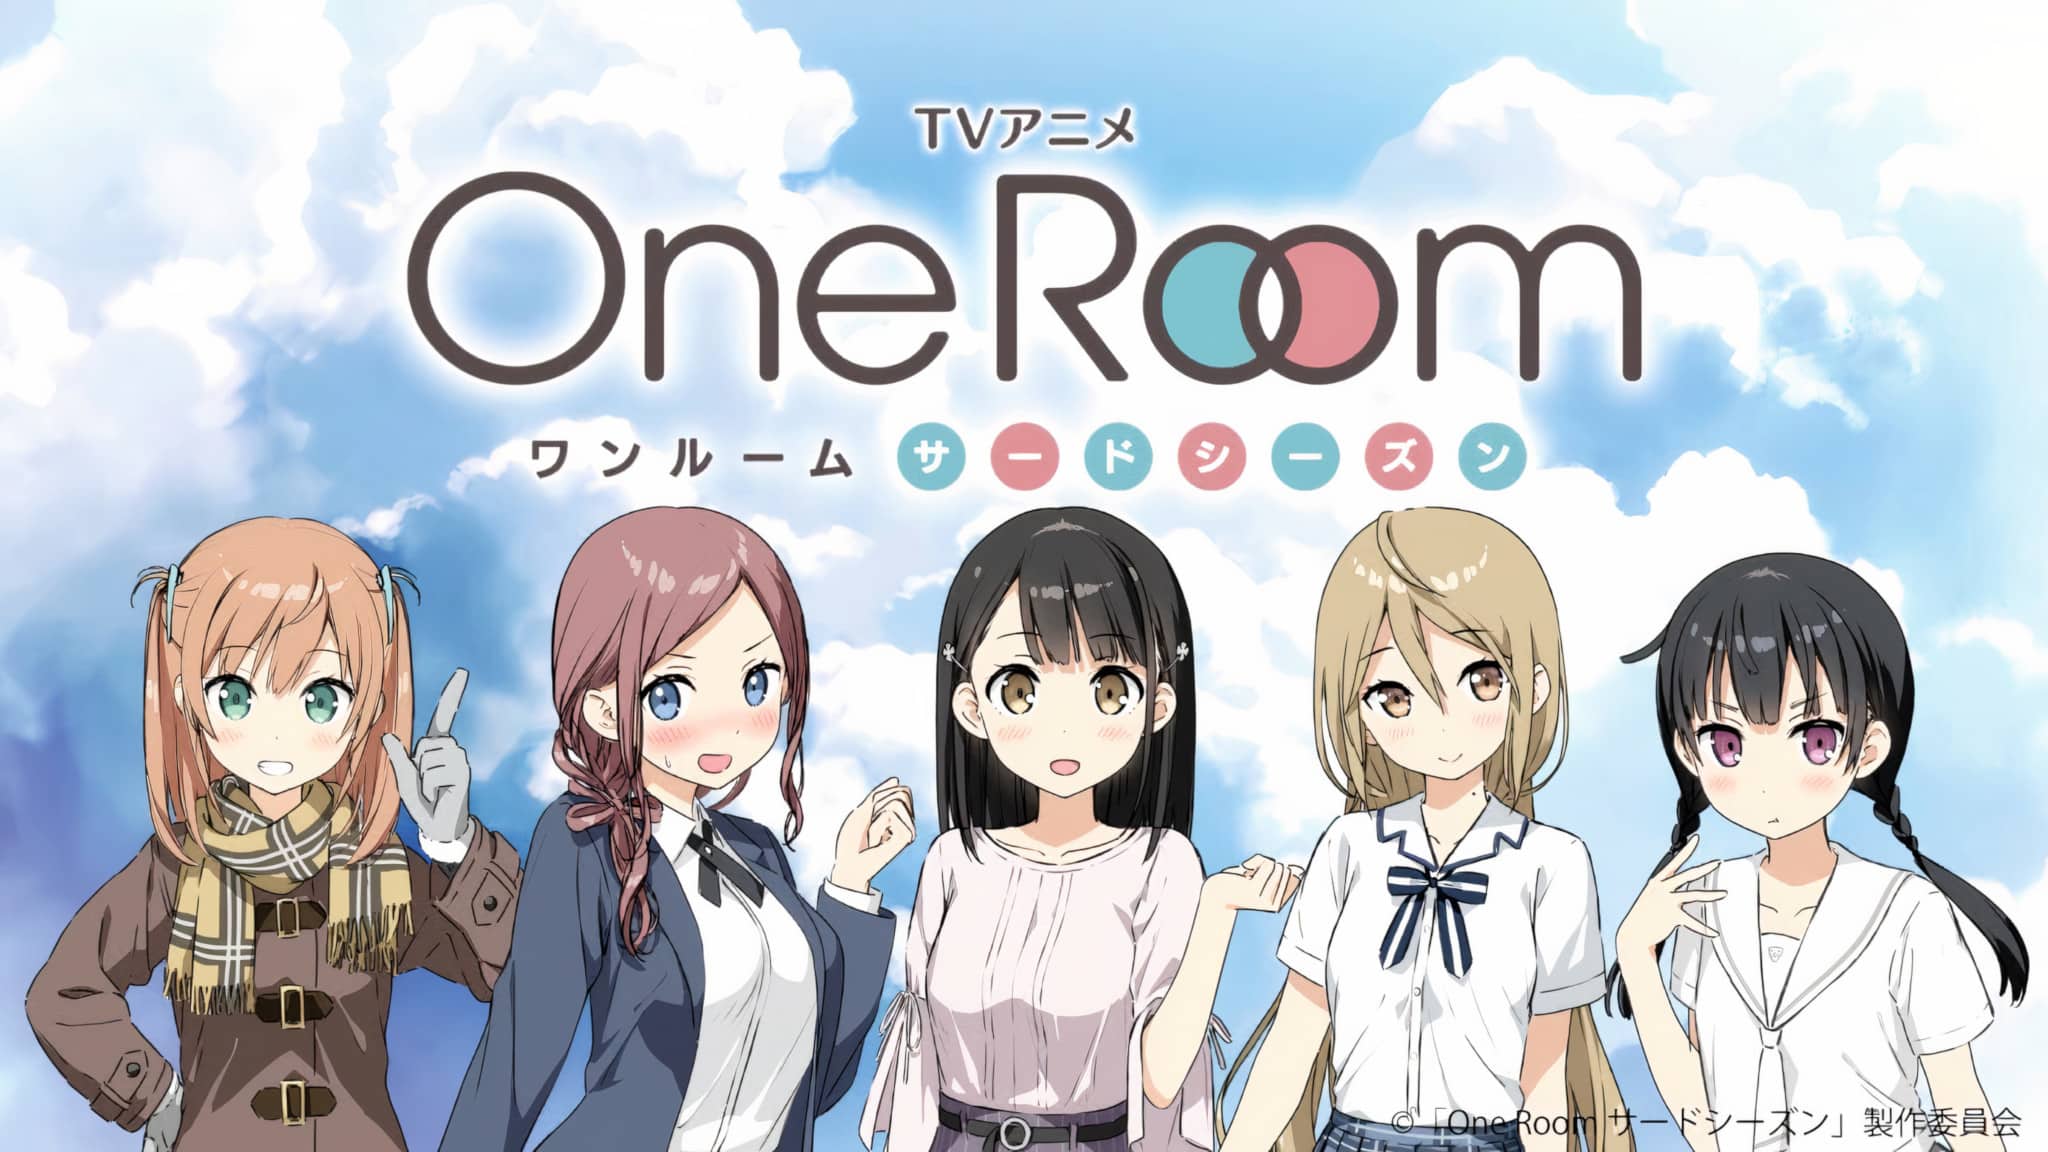 Annonce de l'anime One Room Saison 3 en teaser vidéo